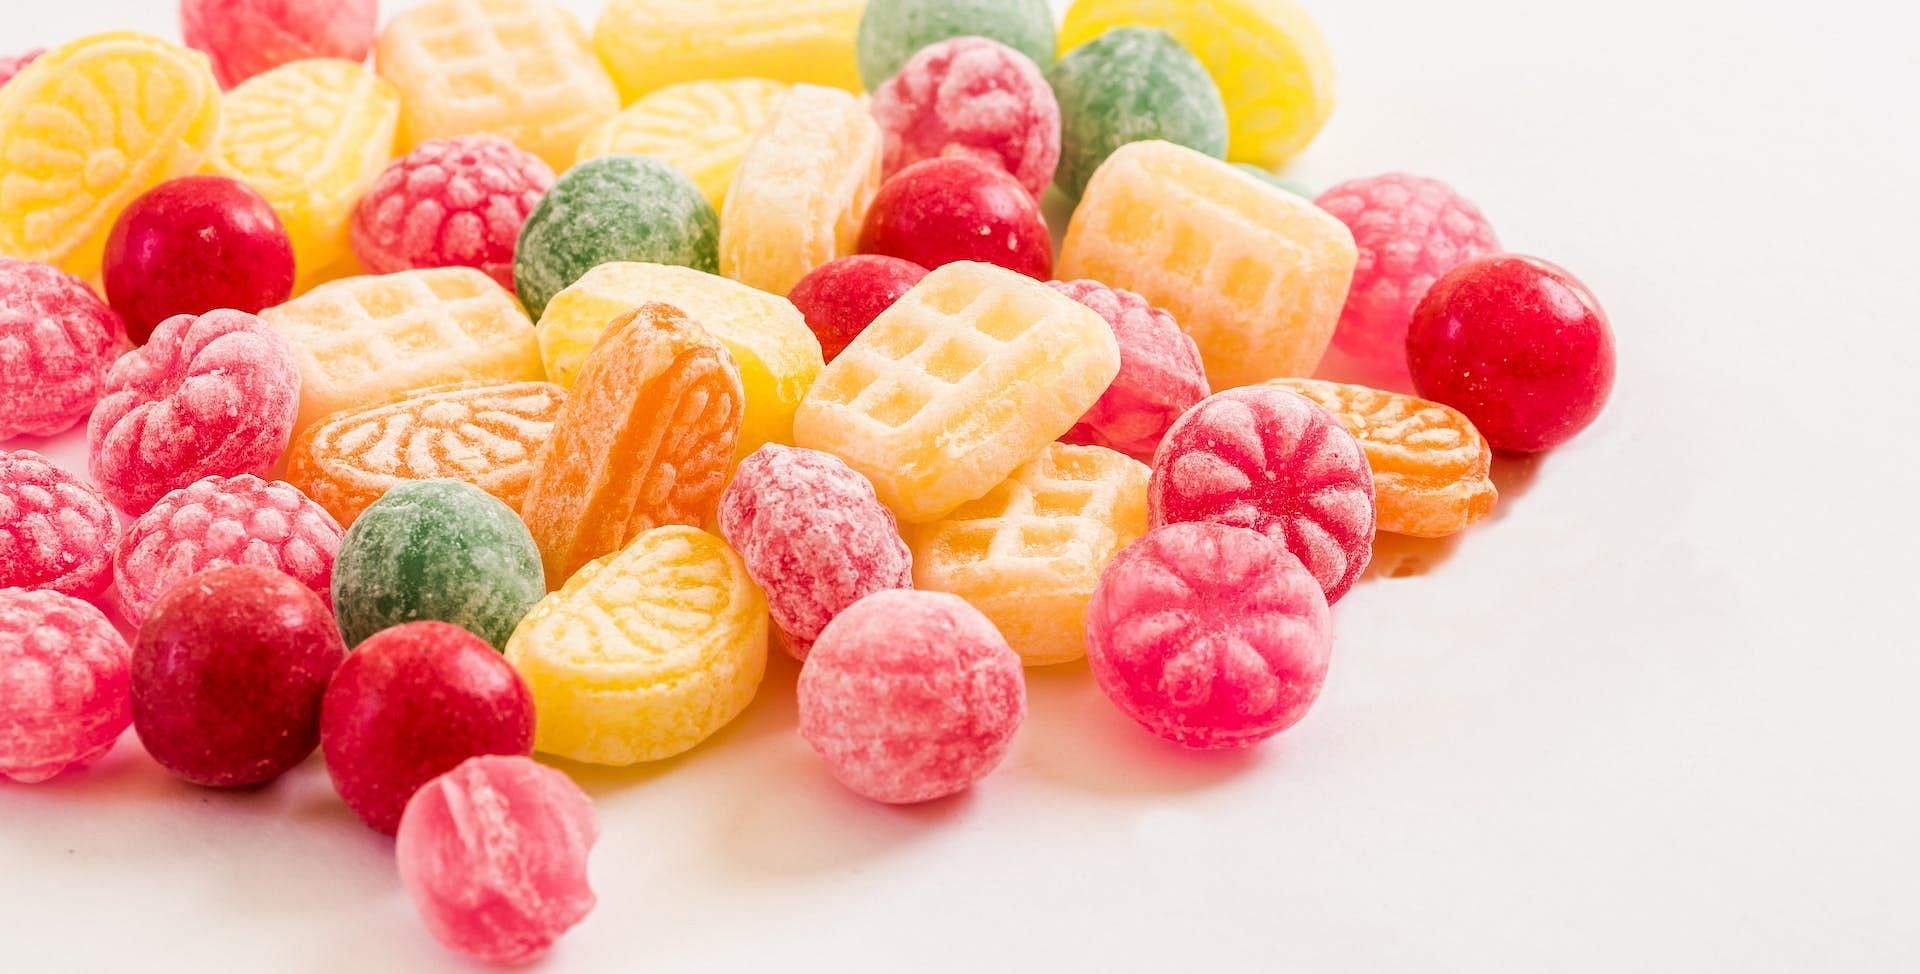 Foods bad for teeth includes candies. (Image via Pexels/Ylanite Koppens)